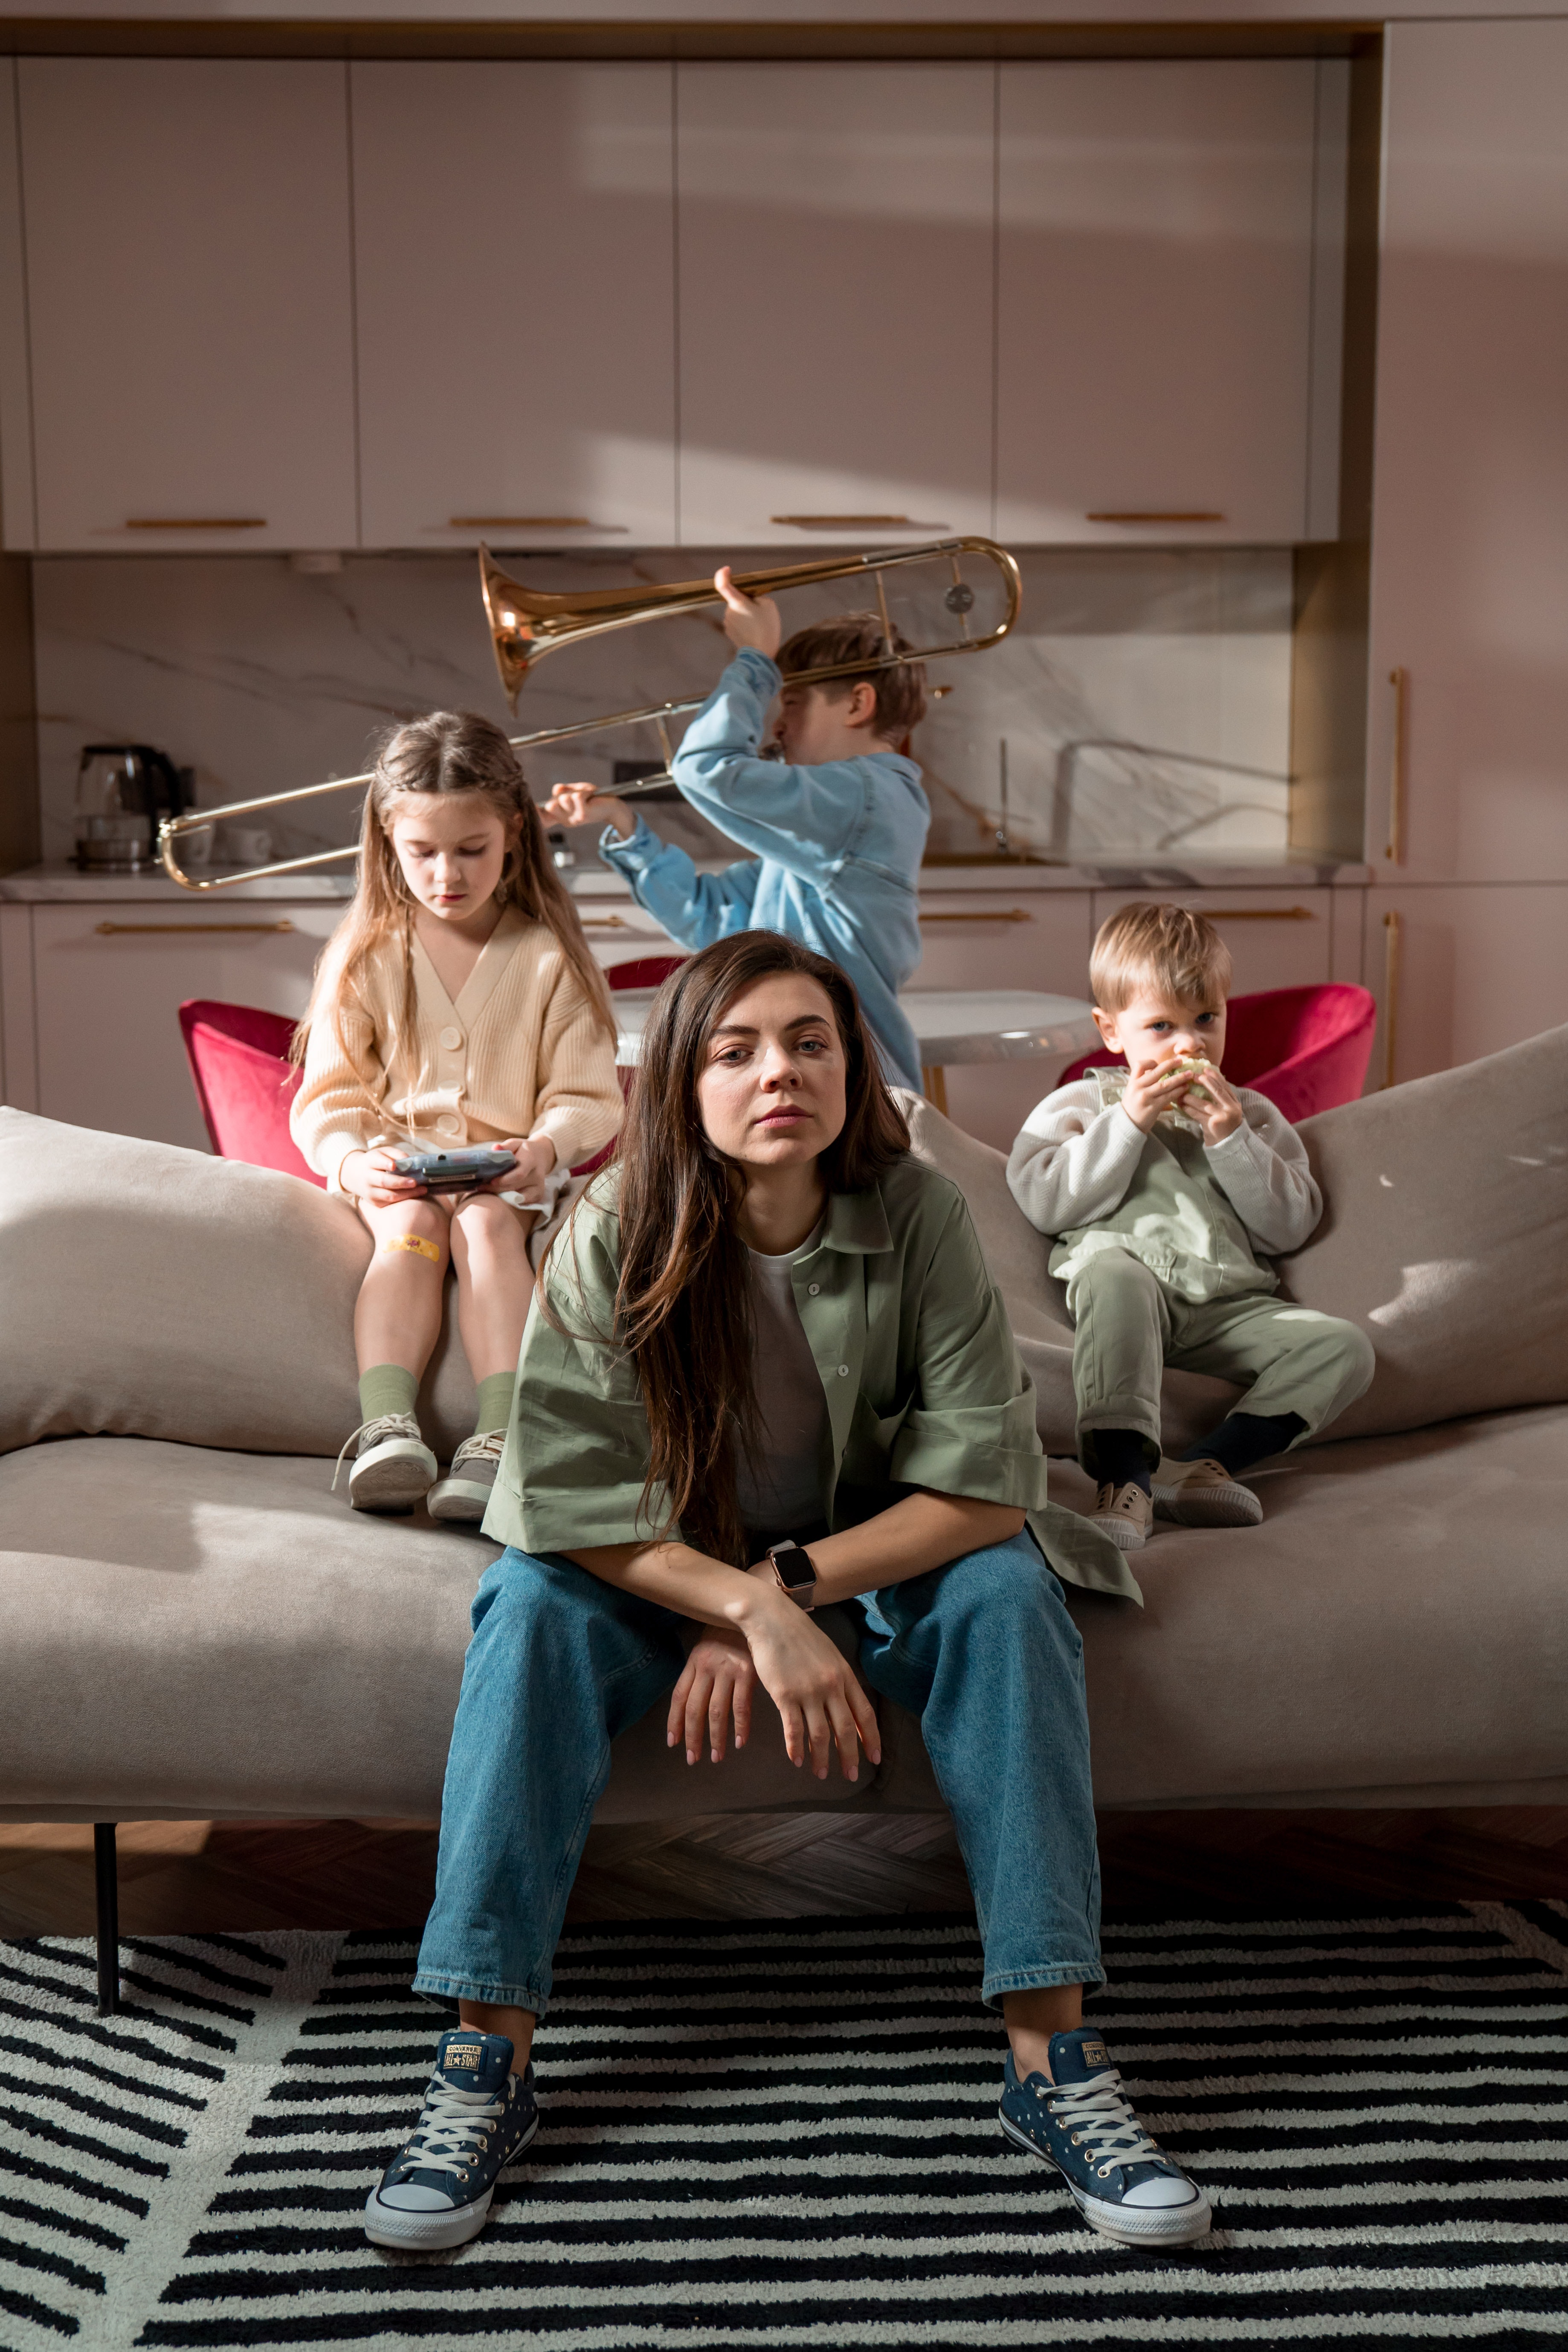 Eine Frau und drei Kinder in einem Wohnzimmer | Quelle: Pexels